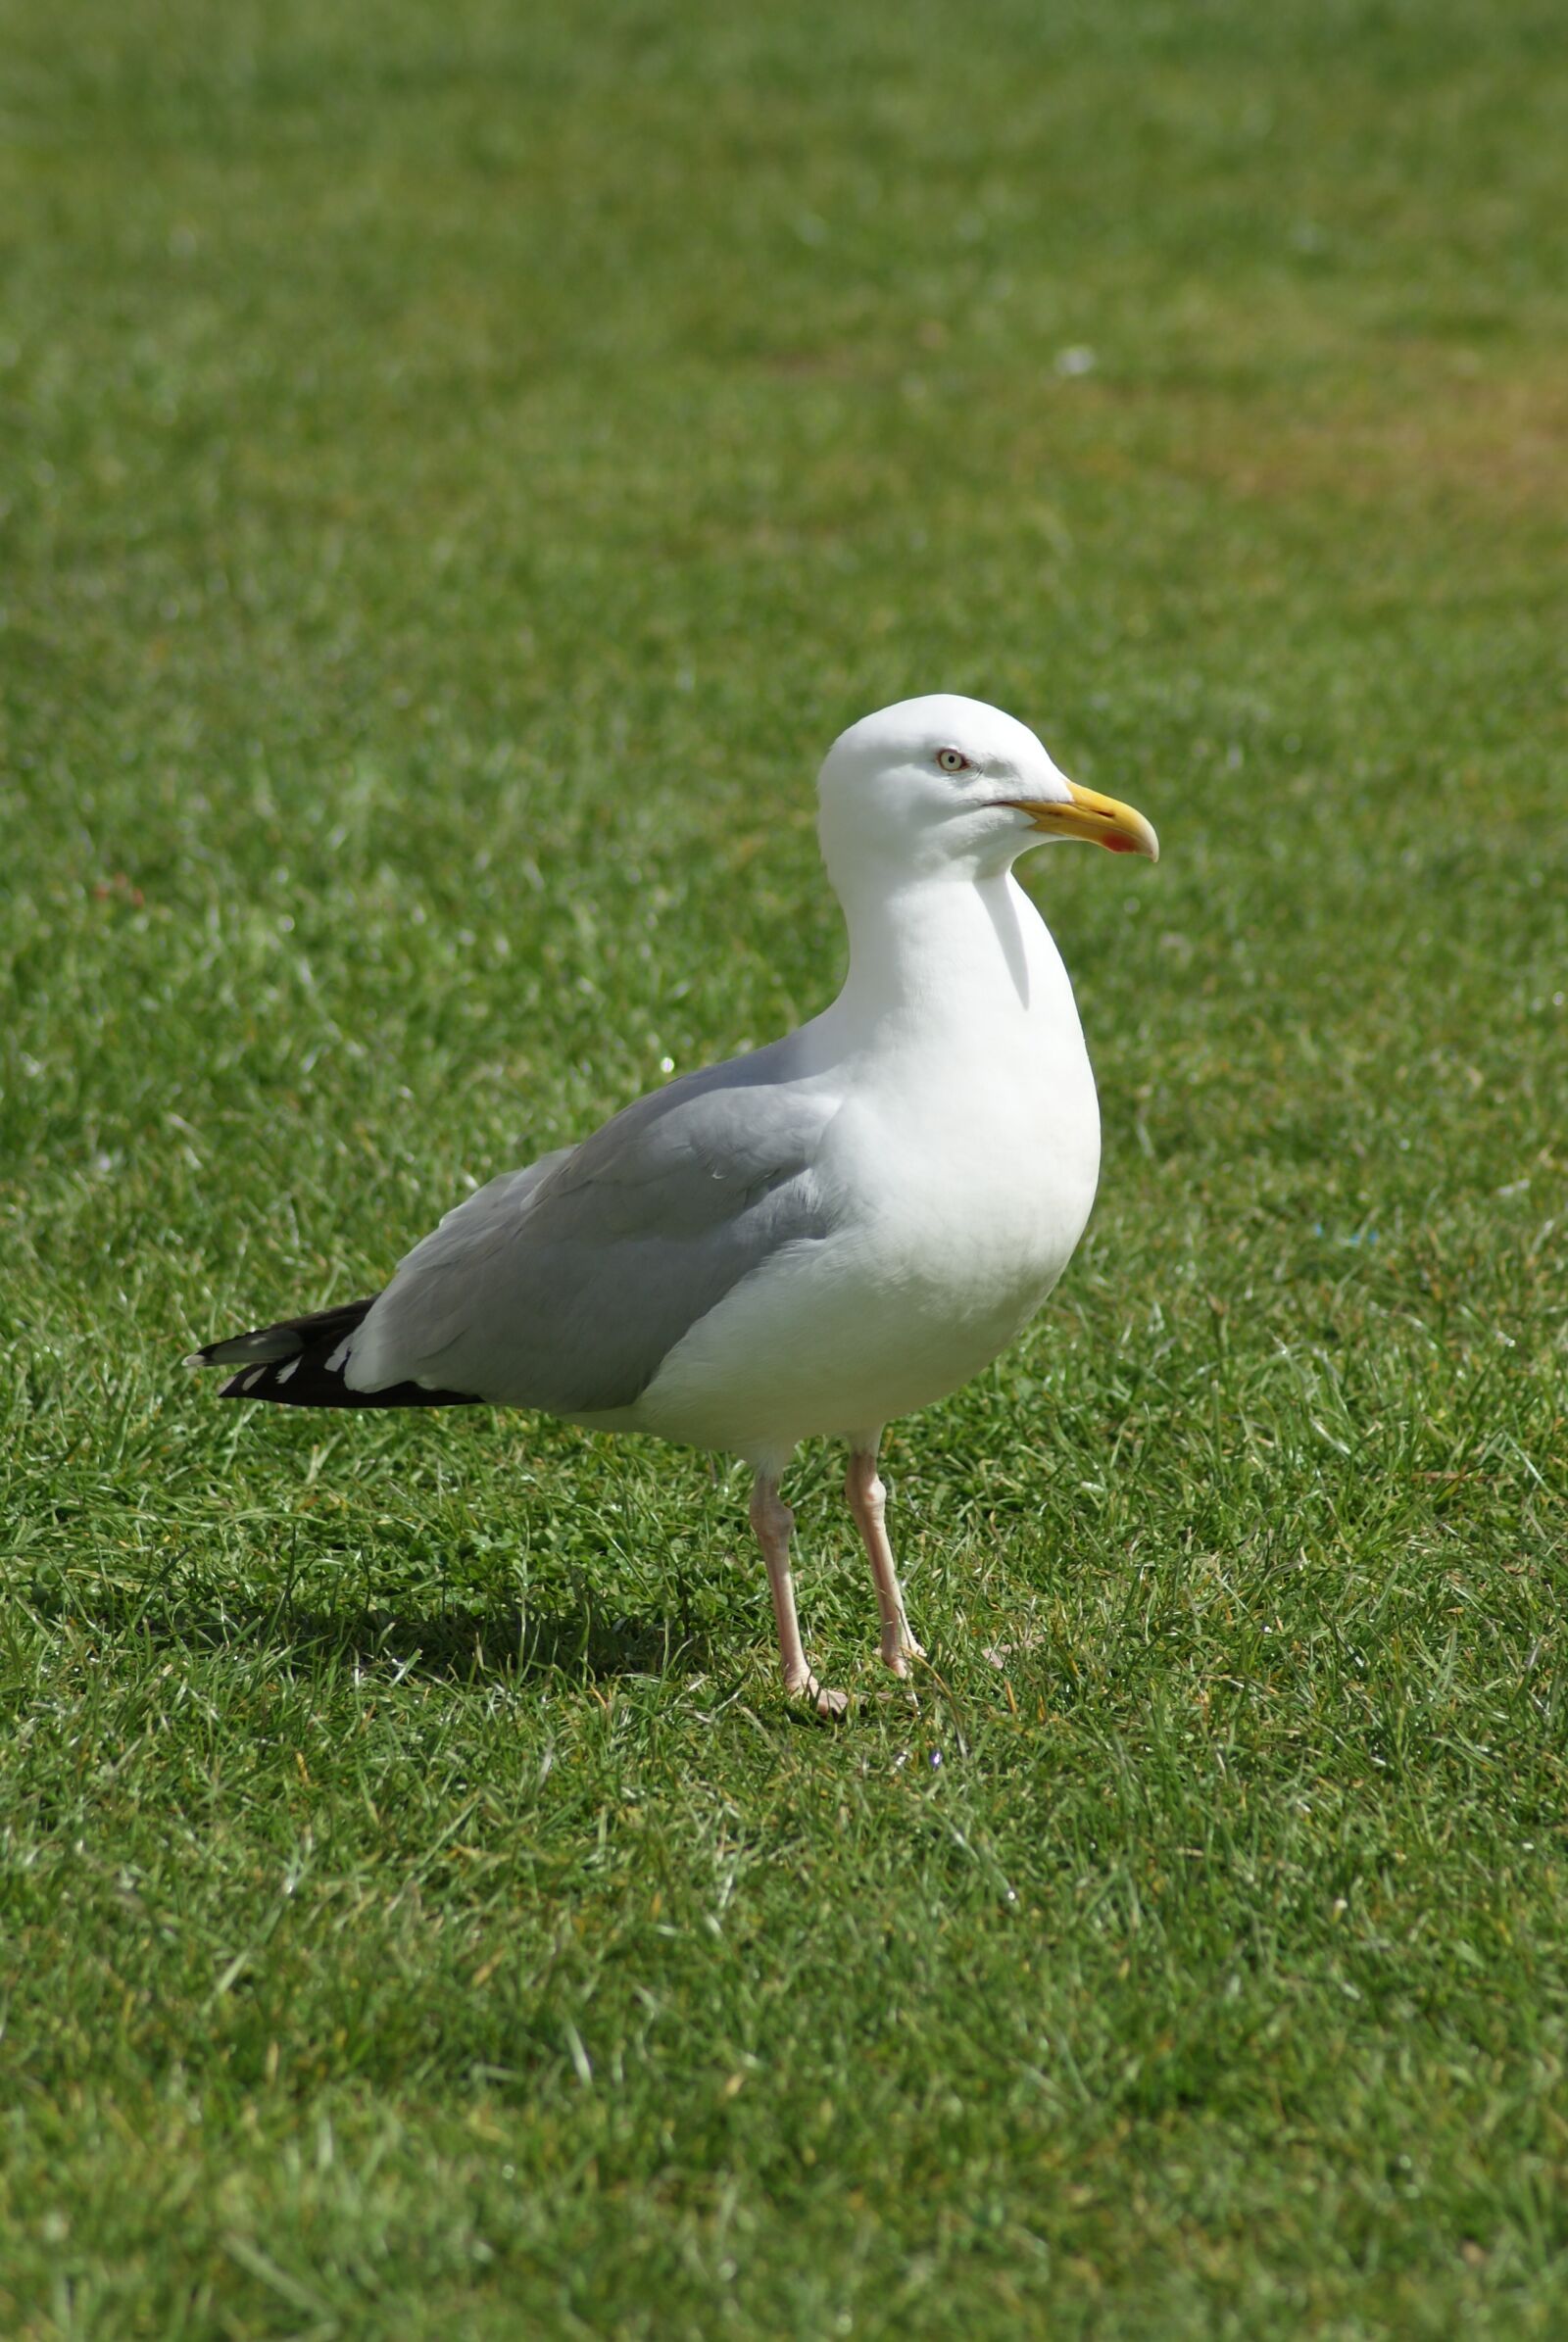 Sony Alpha DSLR-A230 sample photo. Bird, the seagull, animal photography